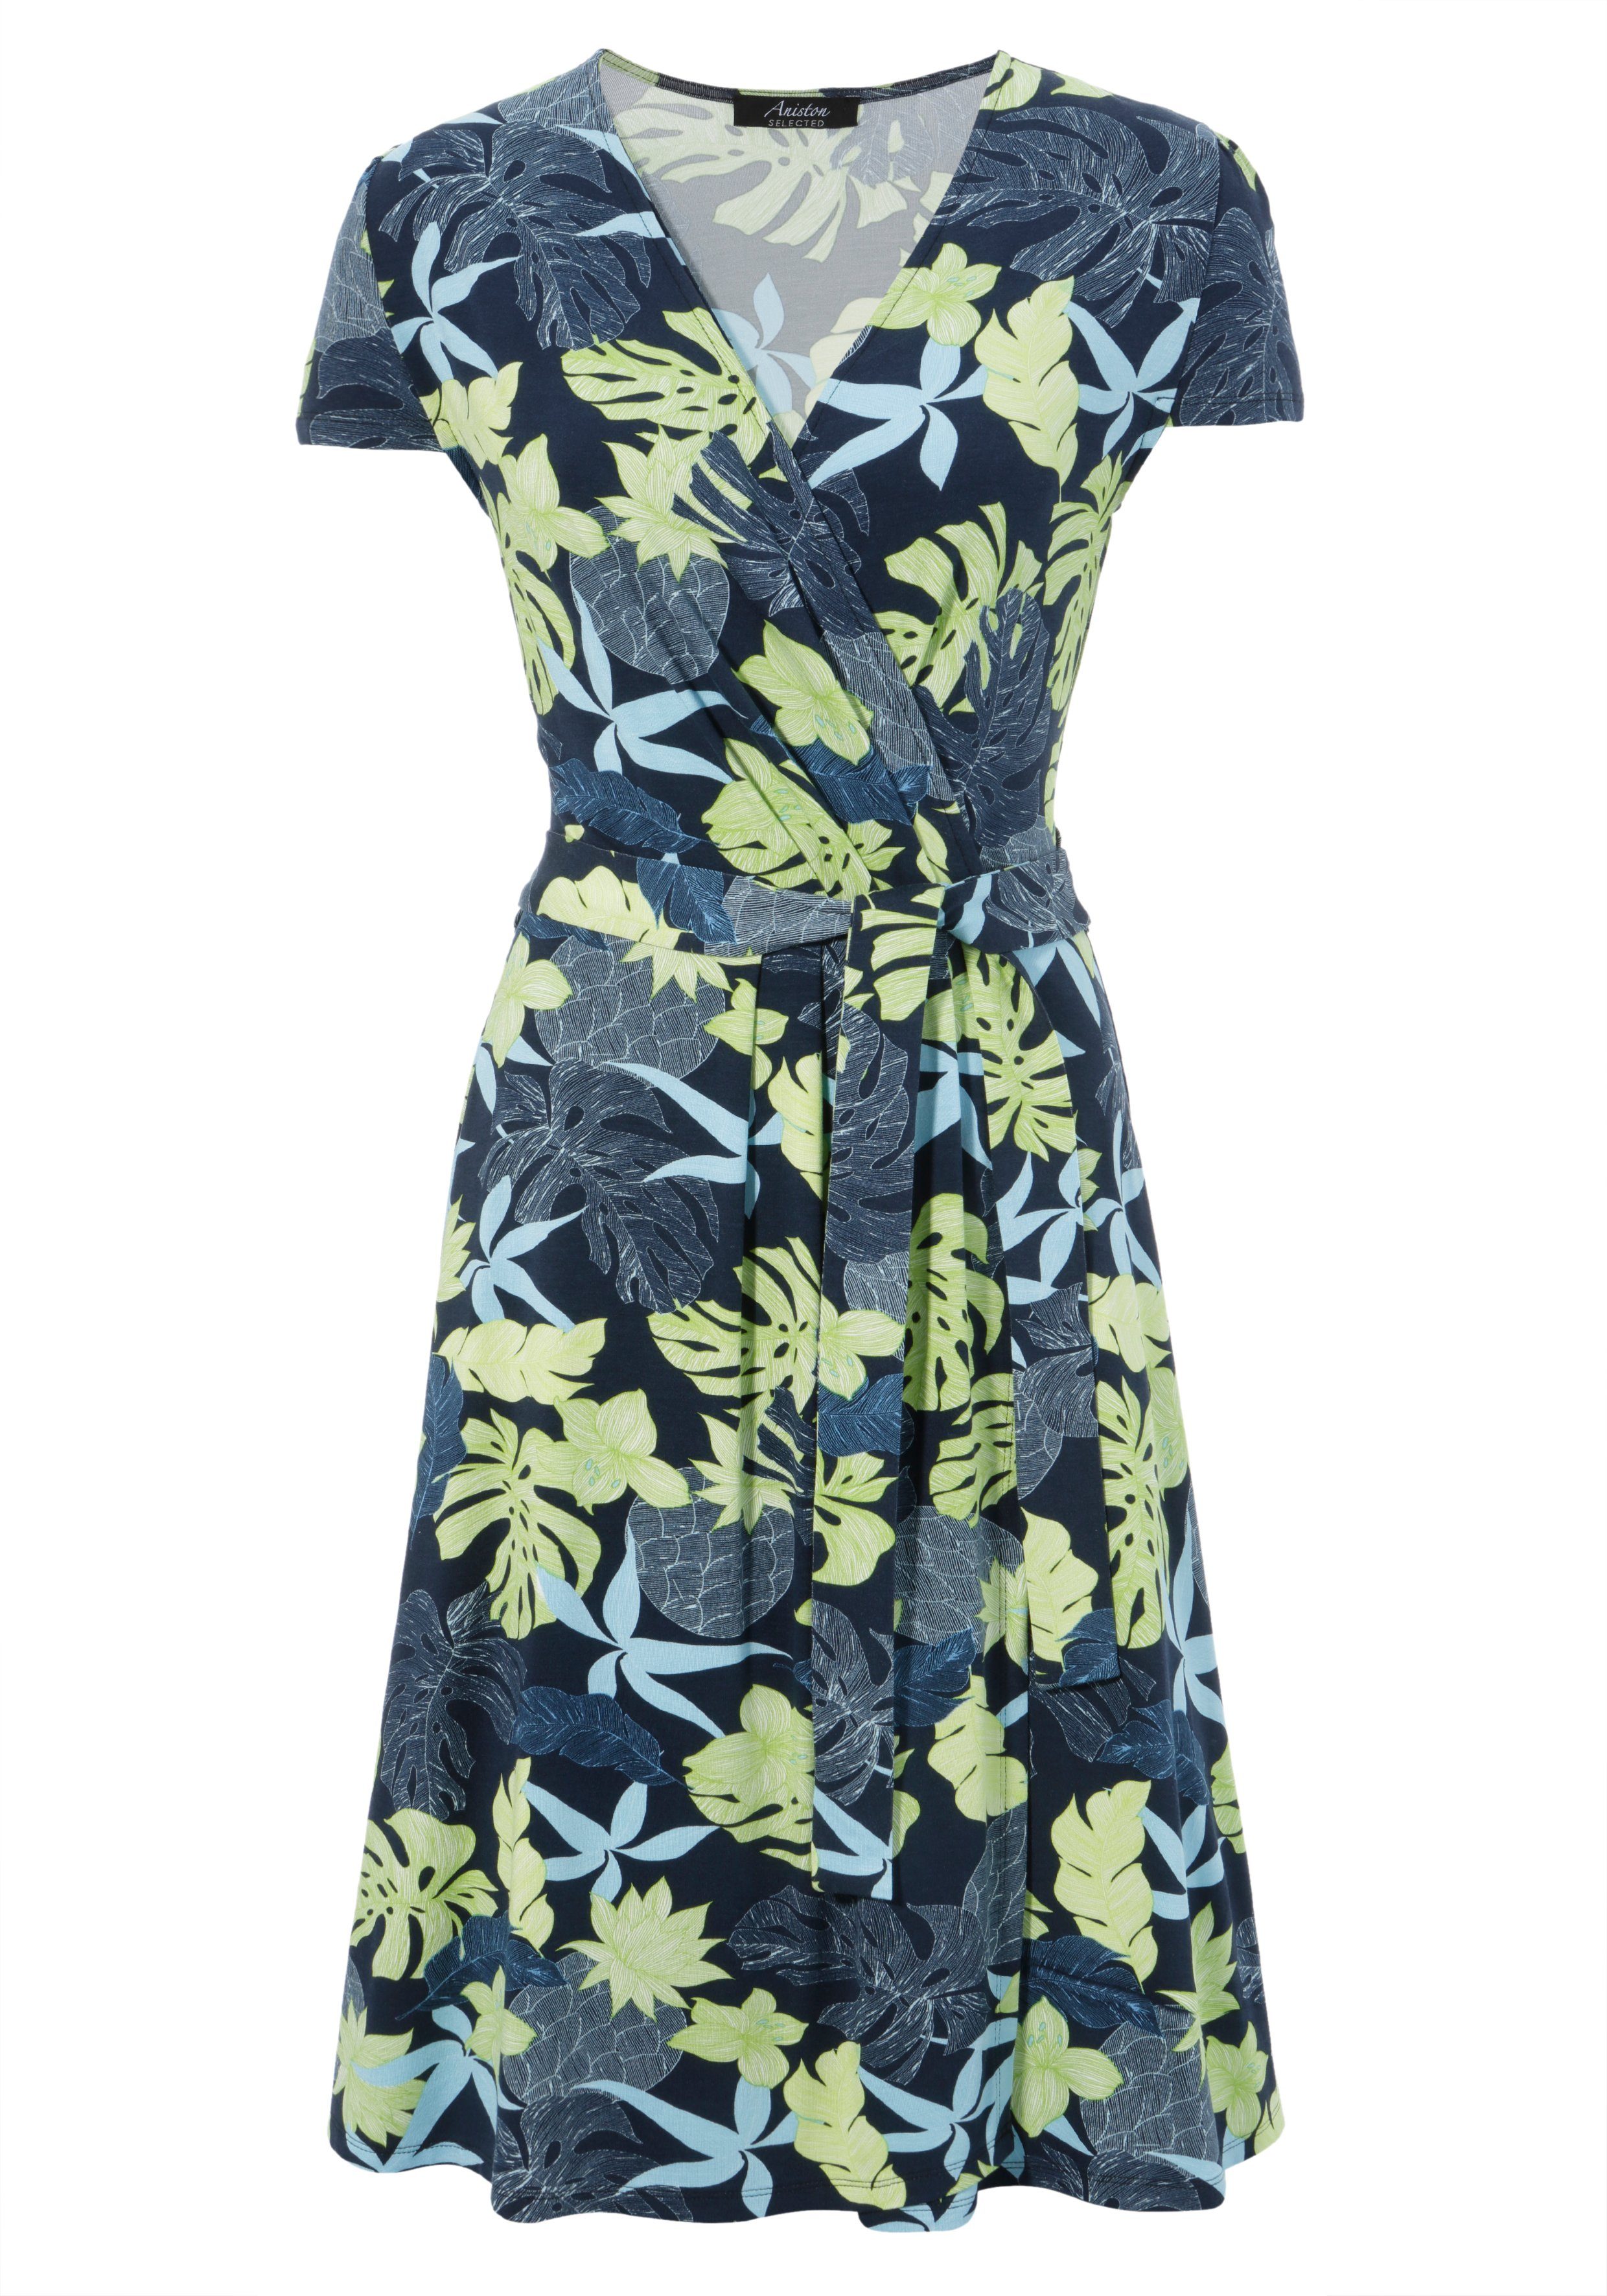 SELECTED modischen Farben Aniston in Sommerkleid